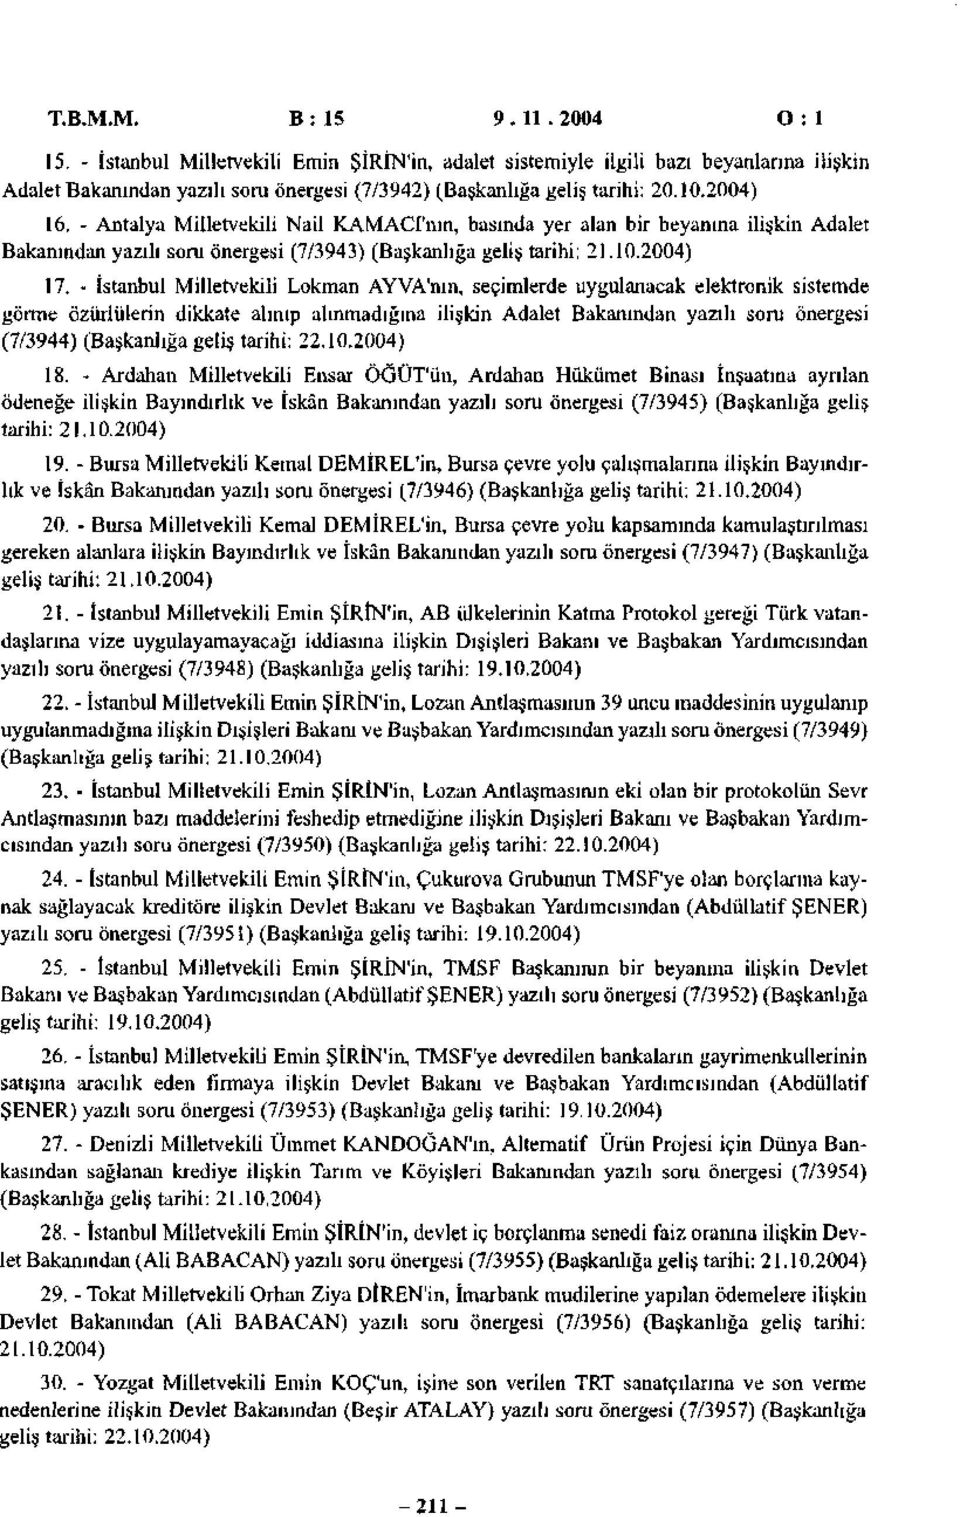 - Antalya Milletvekili Nail KAMACI'nın, basında yer alan bir beyanına ilişkin Adalet Bakanından yazılı soru önergesi (7/3943) (Başkanlığa geliş tarihi: 21.10.2004) 17.